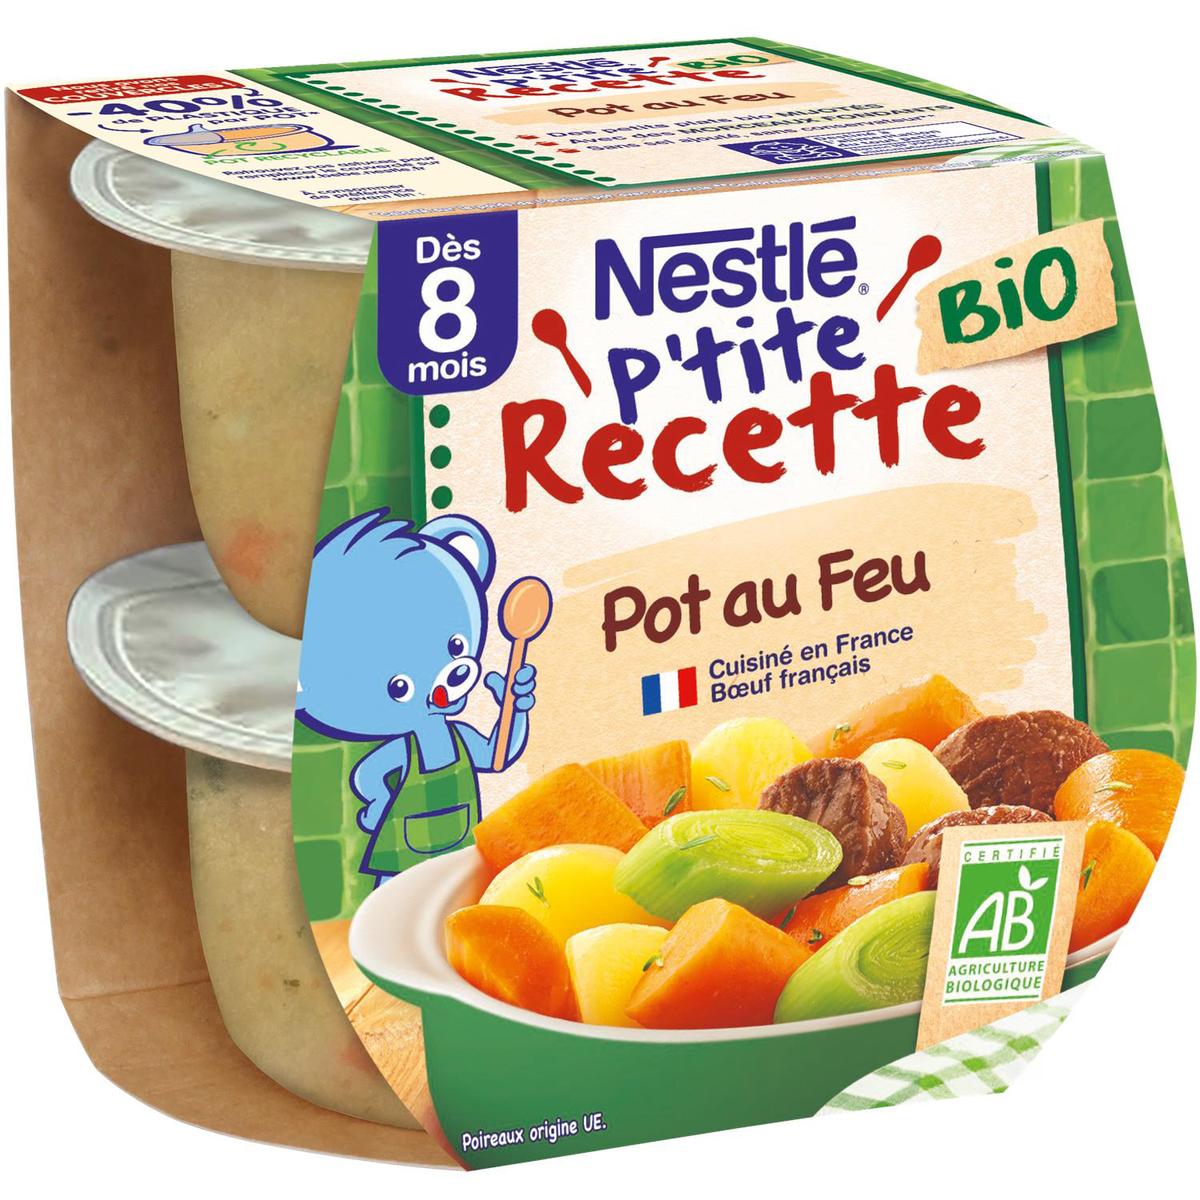 Nestlé - P'tite Recette Pot au feu Bio Bol Bébé Dès 8 mois, 2x190g